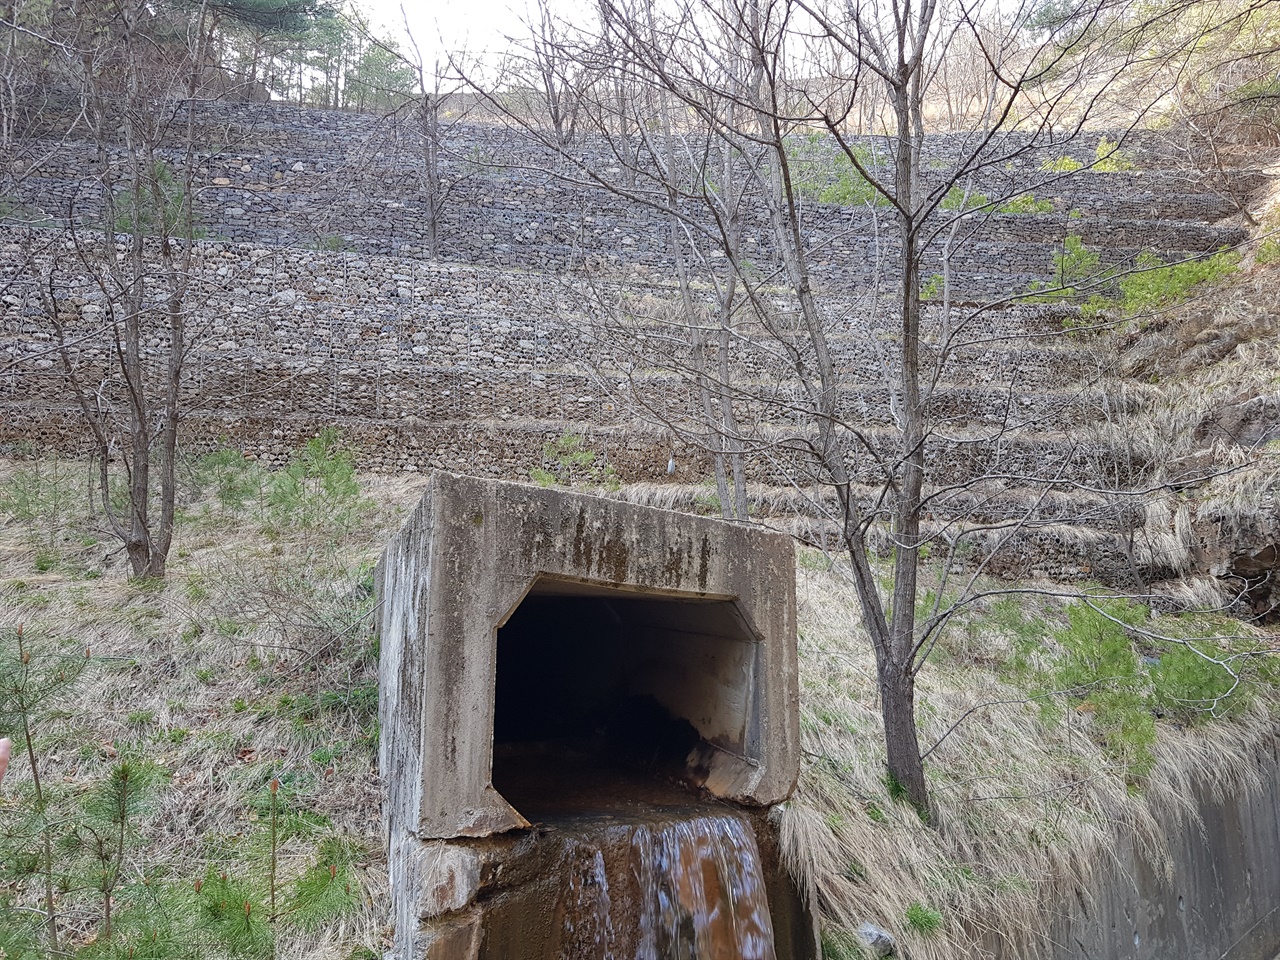 2019년 4월의 대현리 광미댐. 계곡 앞쪽에 돌망태 옹벽이 설치되어 있고 아래 배수관을 통해 침출수가 흘러나오고 있다. 